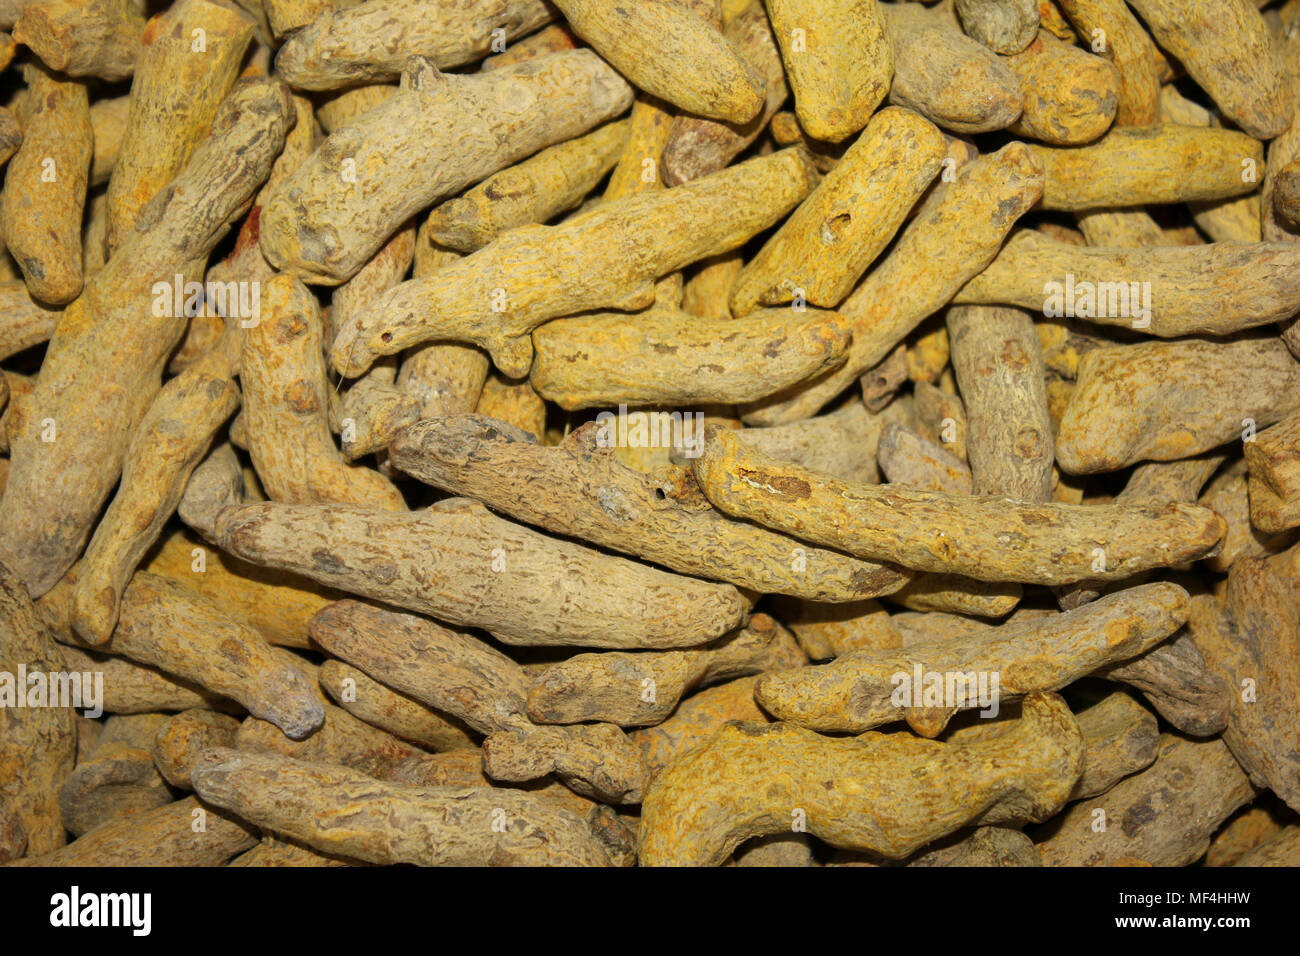 Dried Tumeric Root (Curcuma longa) Stock Photo